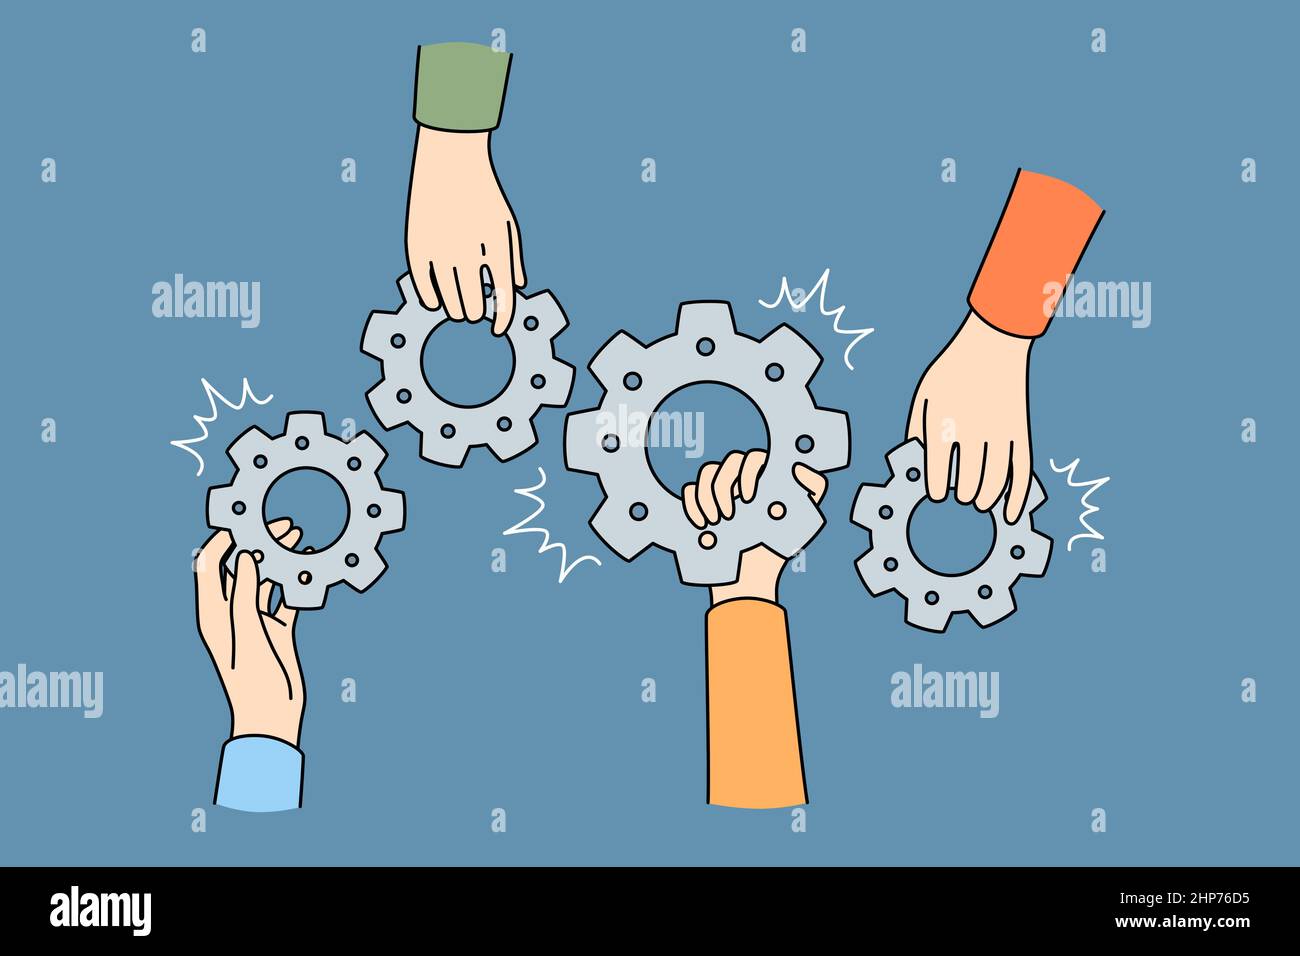 Teamarbeit Zusammenarbeit und Einheit Konzept Stock Vektor